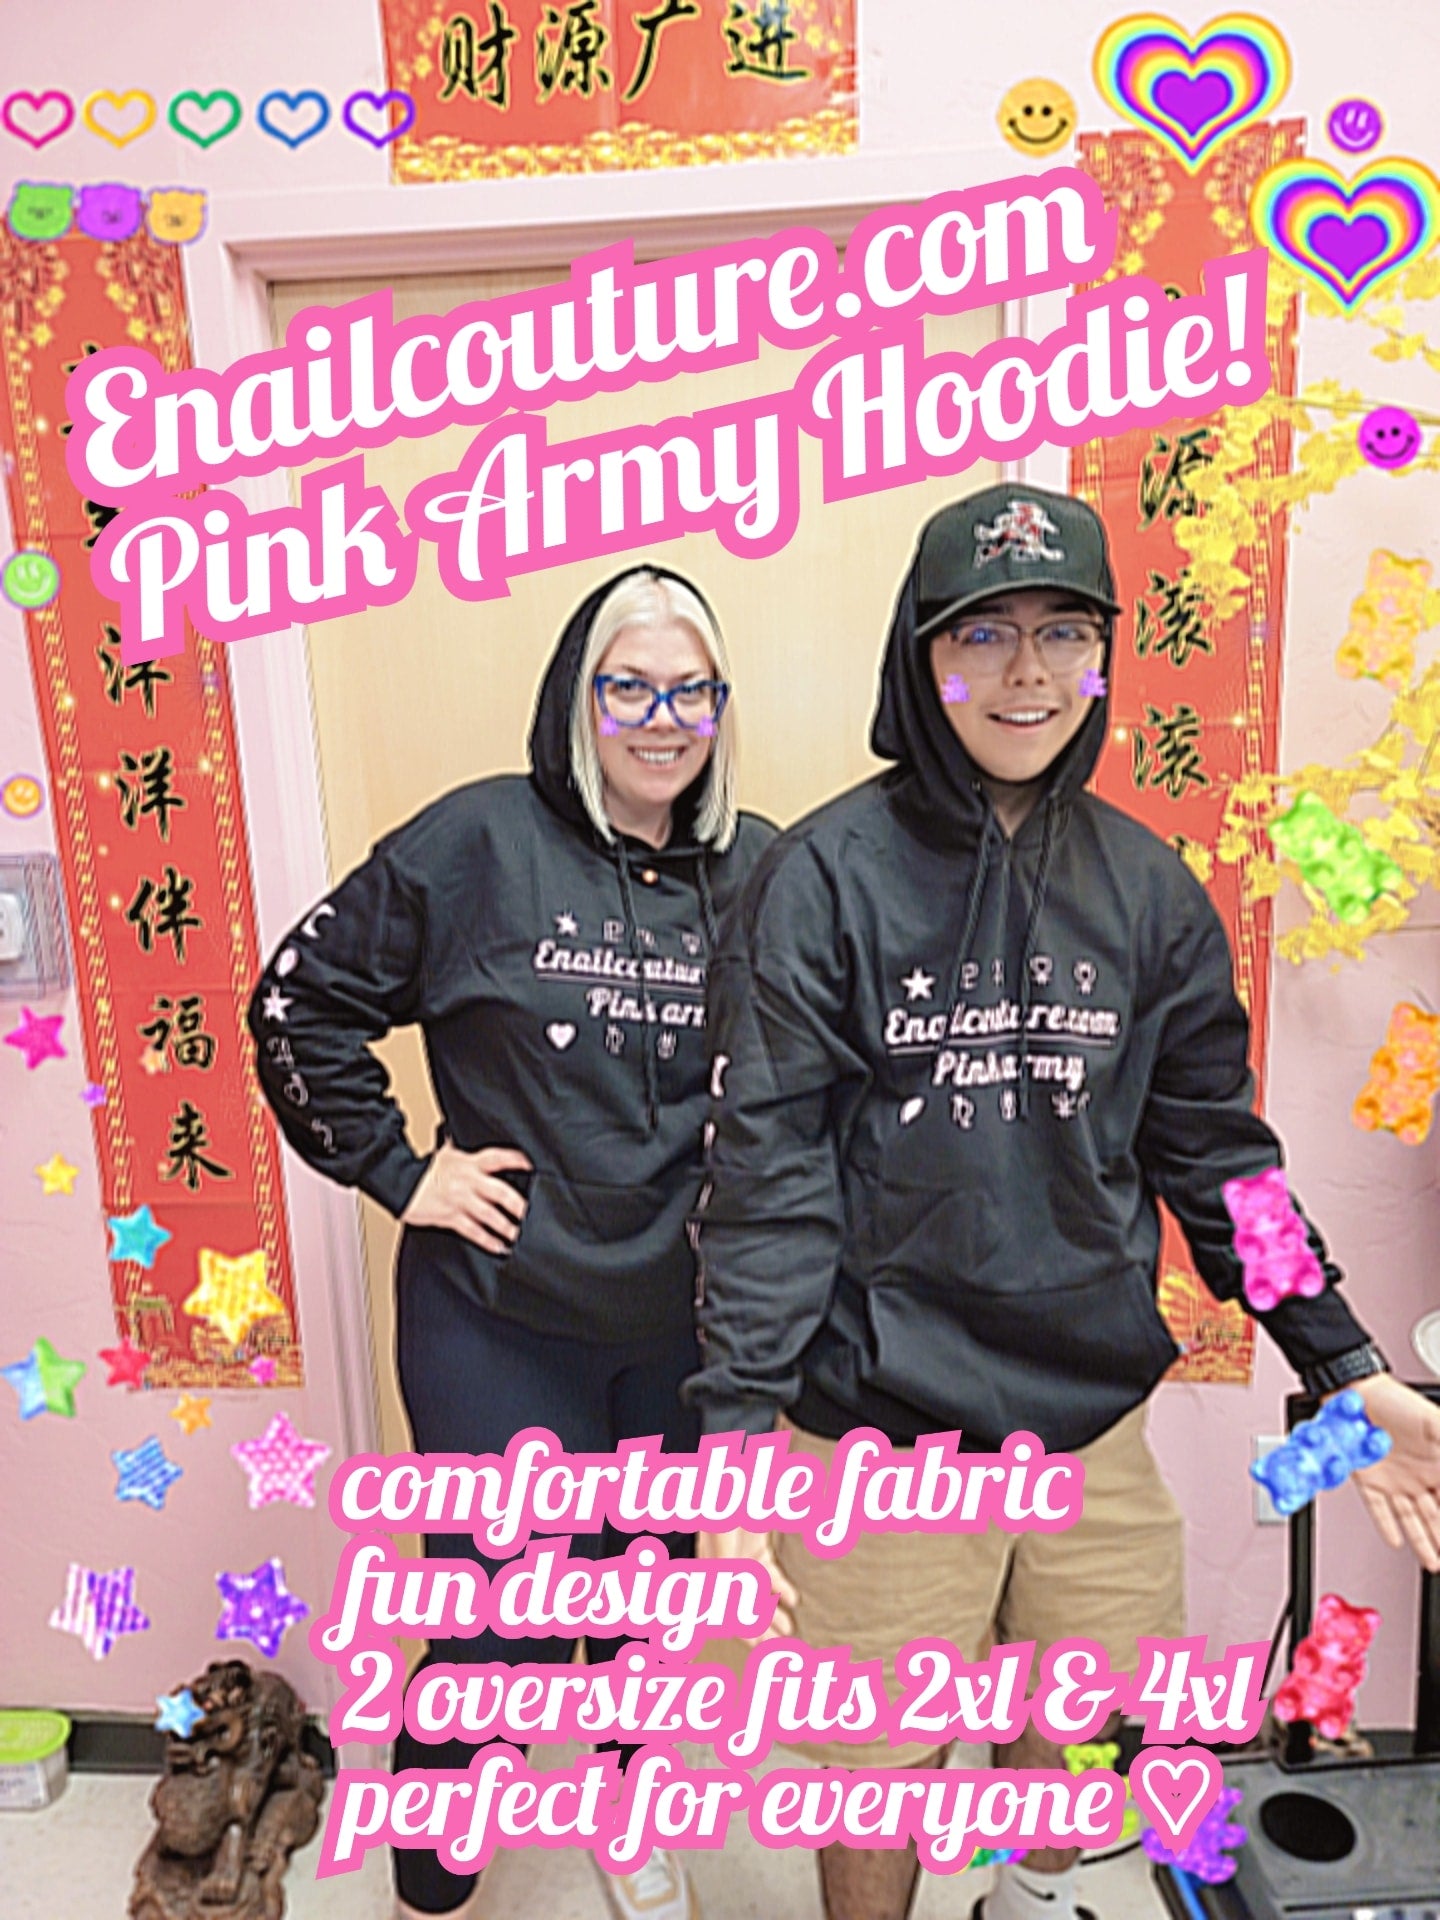 Pink Army Hoodies